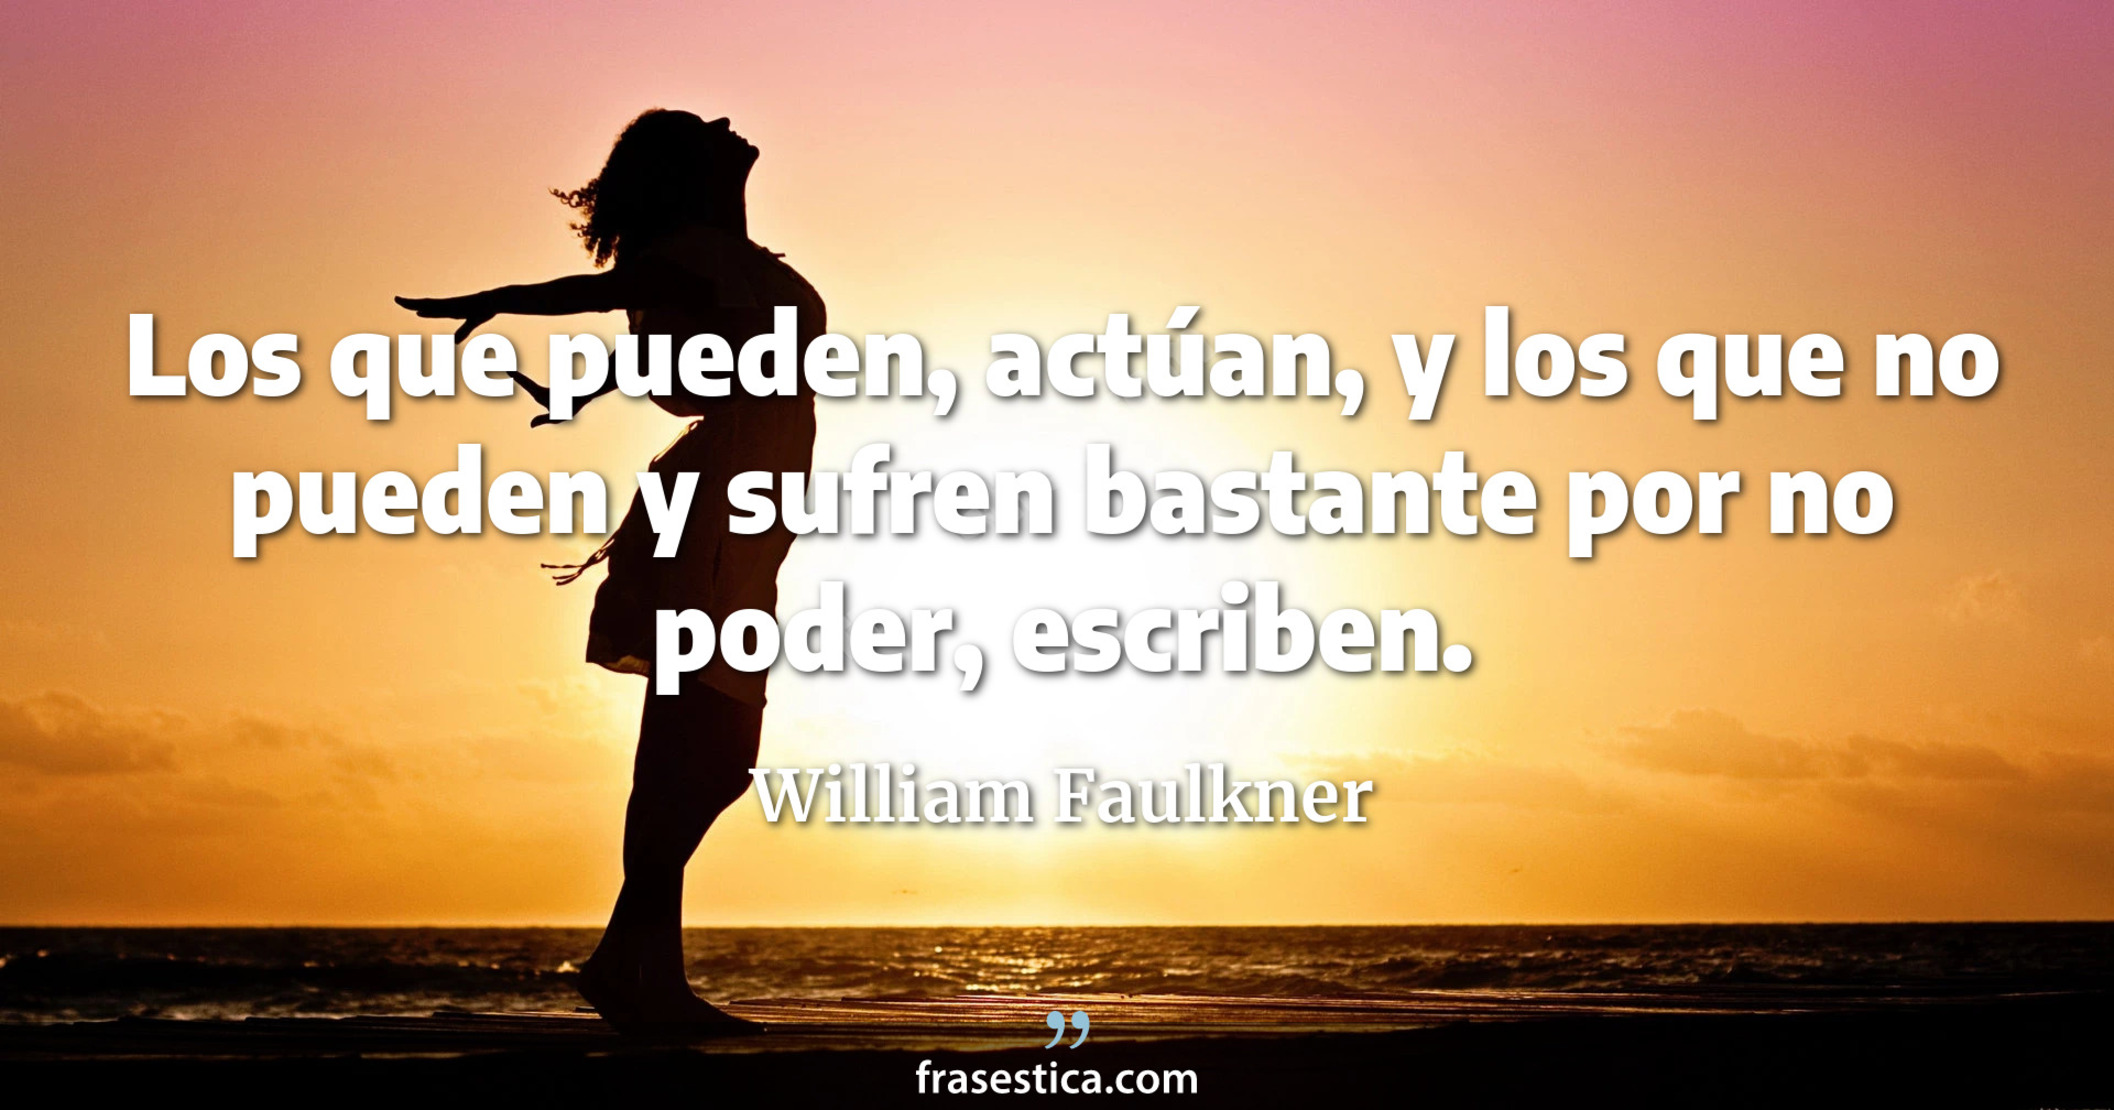 Los que pueden, actúan, y los que no pueden y sufren bastante por no poder, escriben. - William Faulkner